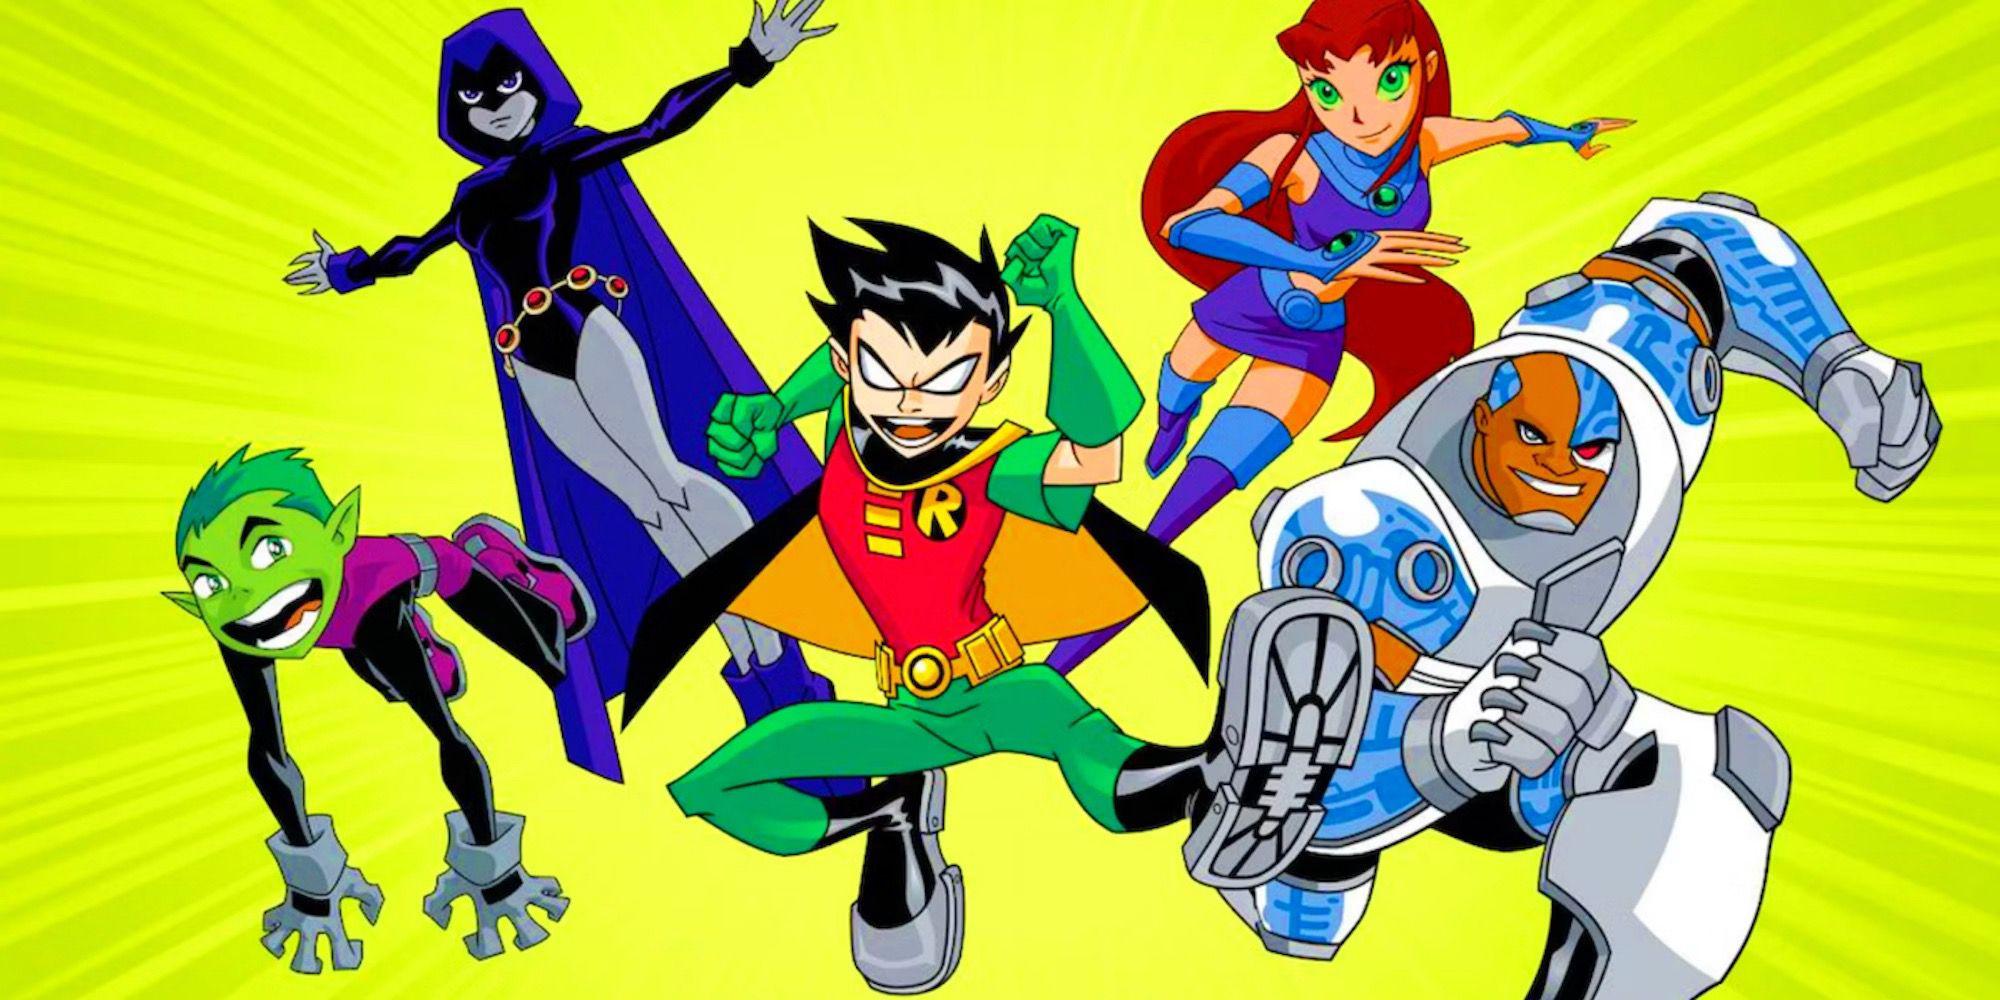 Fortnite: Principais personagens da DC que merecem um crossover